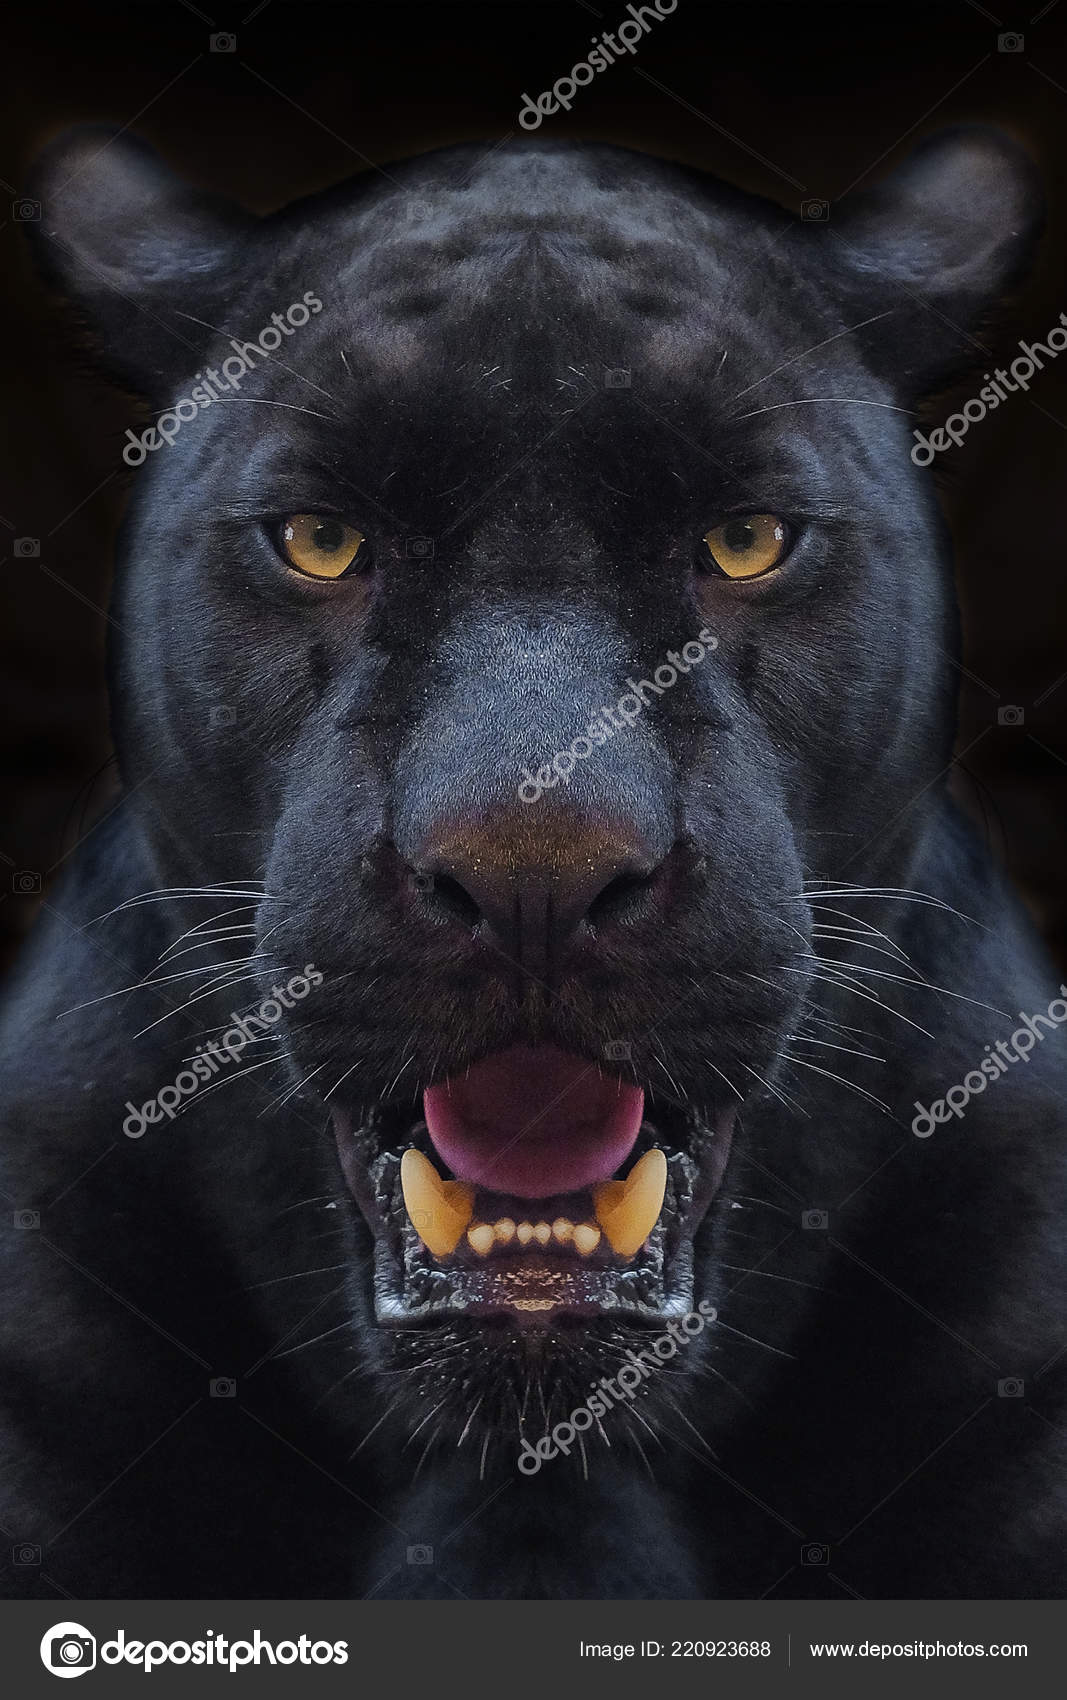 Black panther animal Stock Photos, Royalty Free Black panther animal Images  | Depositphotos